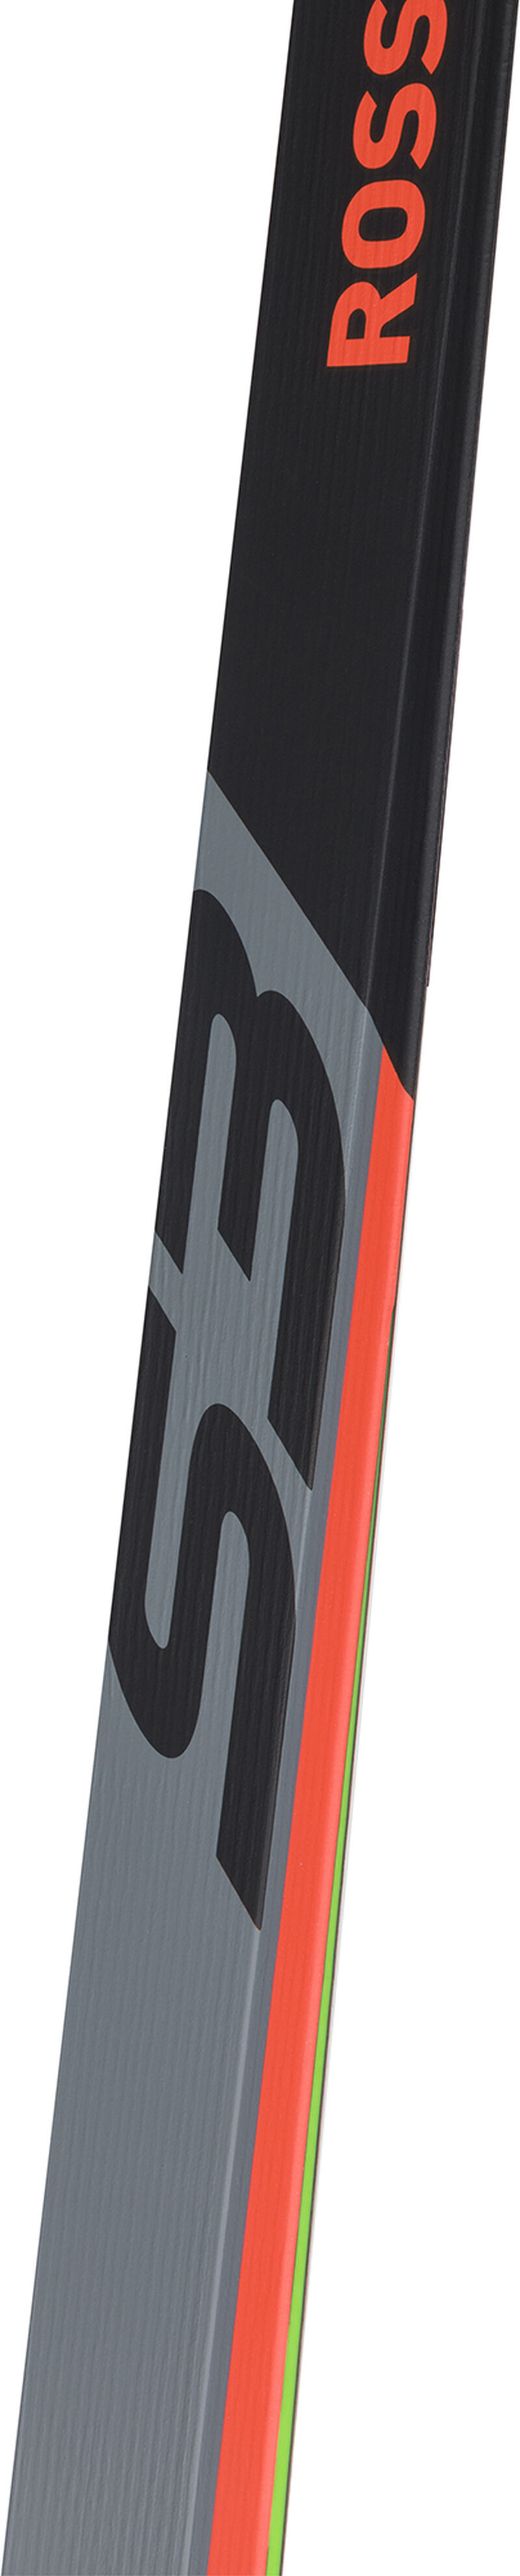 Unisex Nordic Racing Skis X-IUM SKATING PREMIUM+S3-IFP MEDIUM